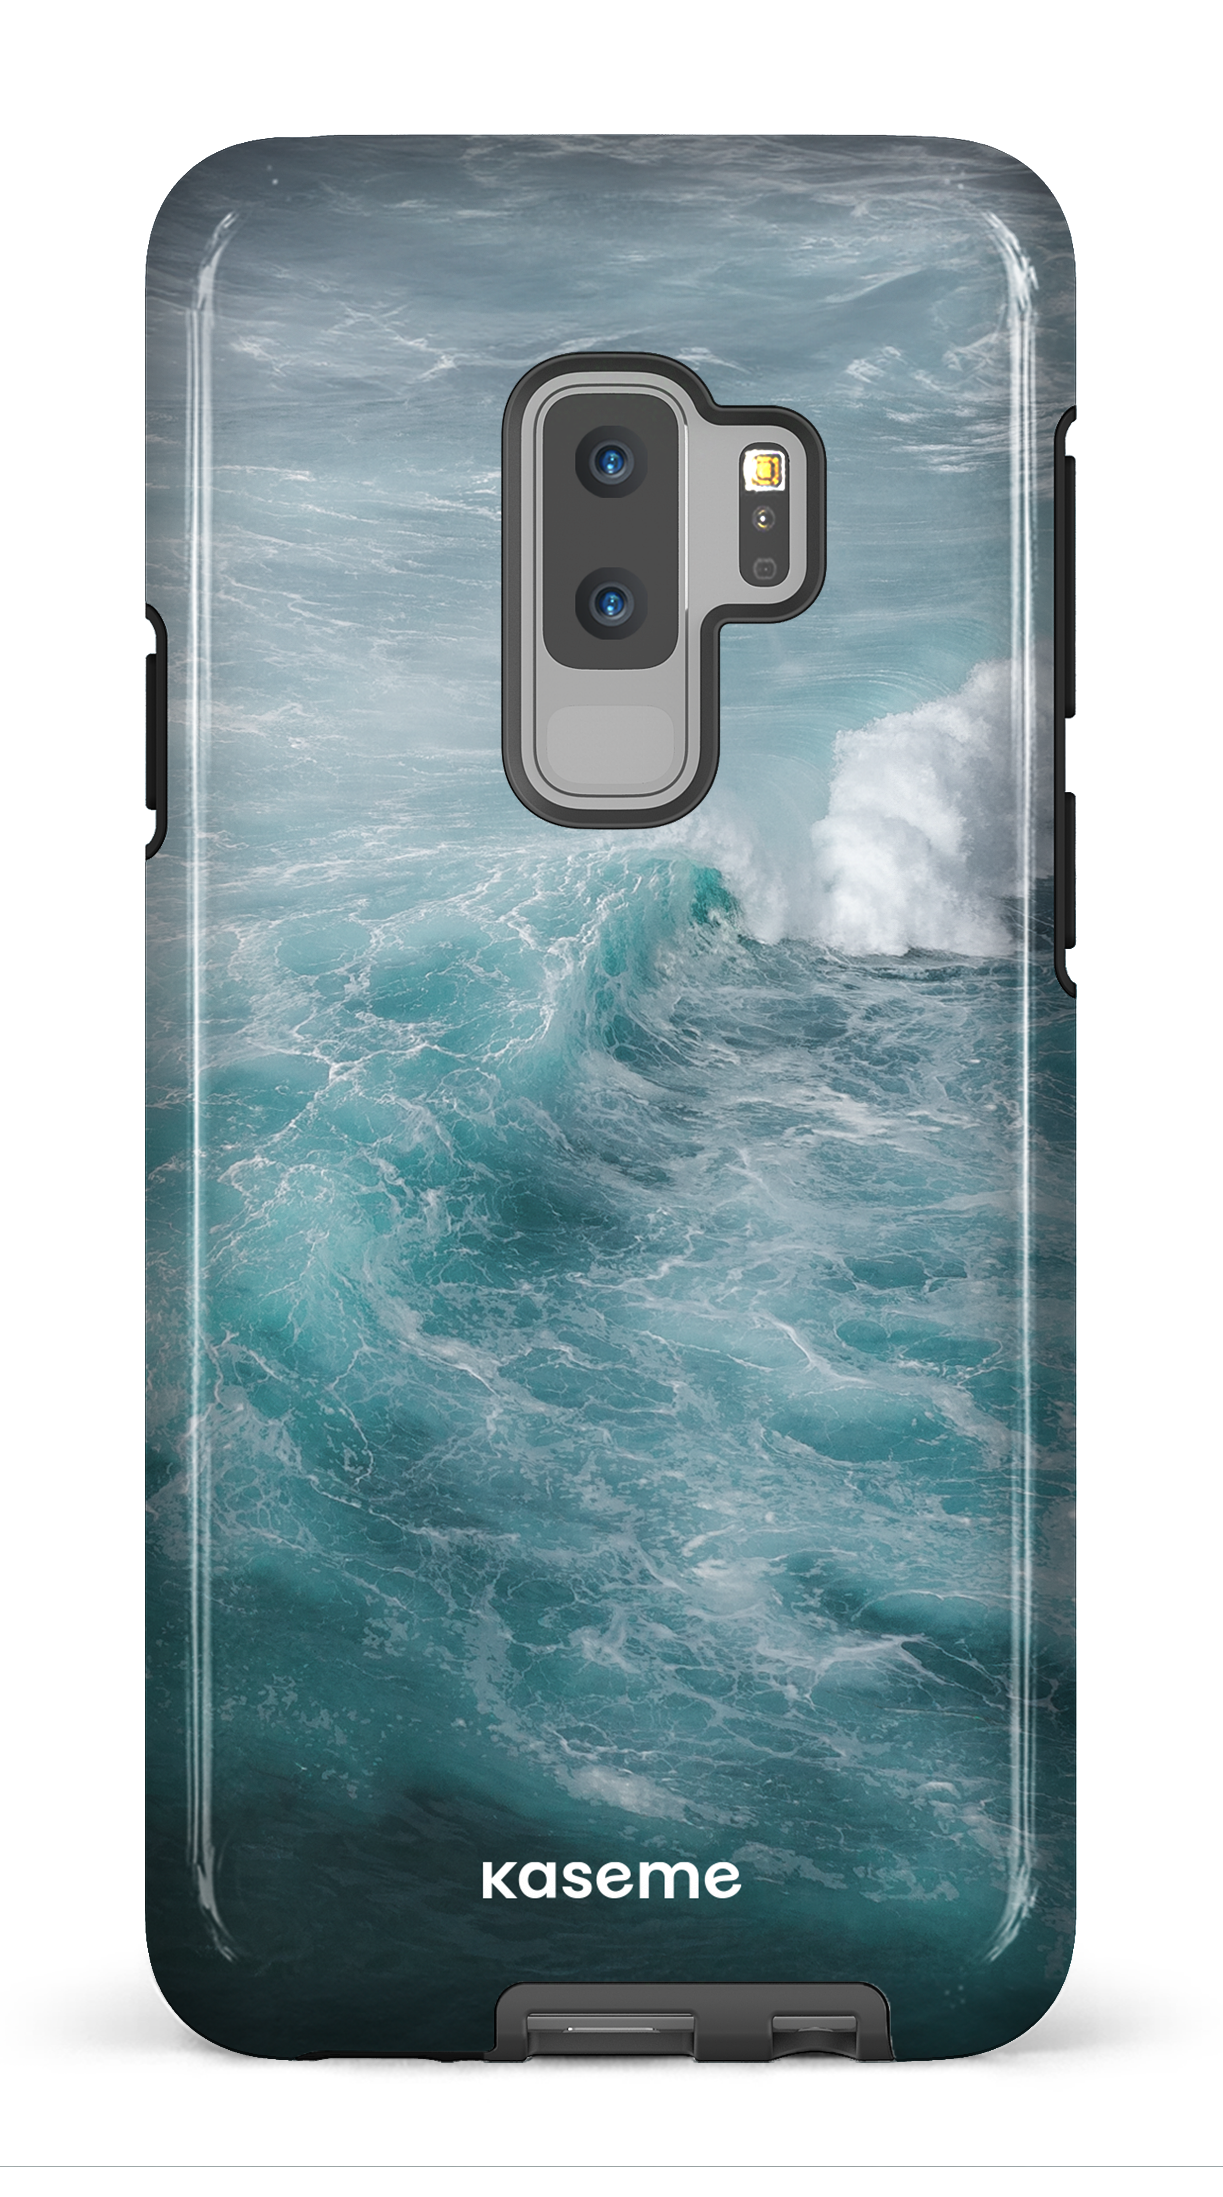 Ocean Textures by Ben Mackay - Galaxy S9 Plus